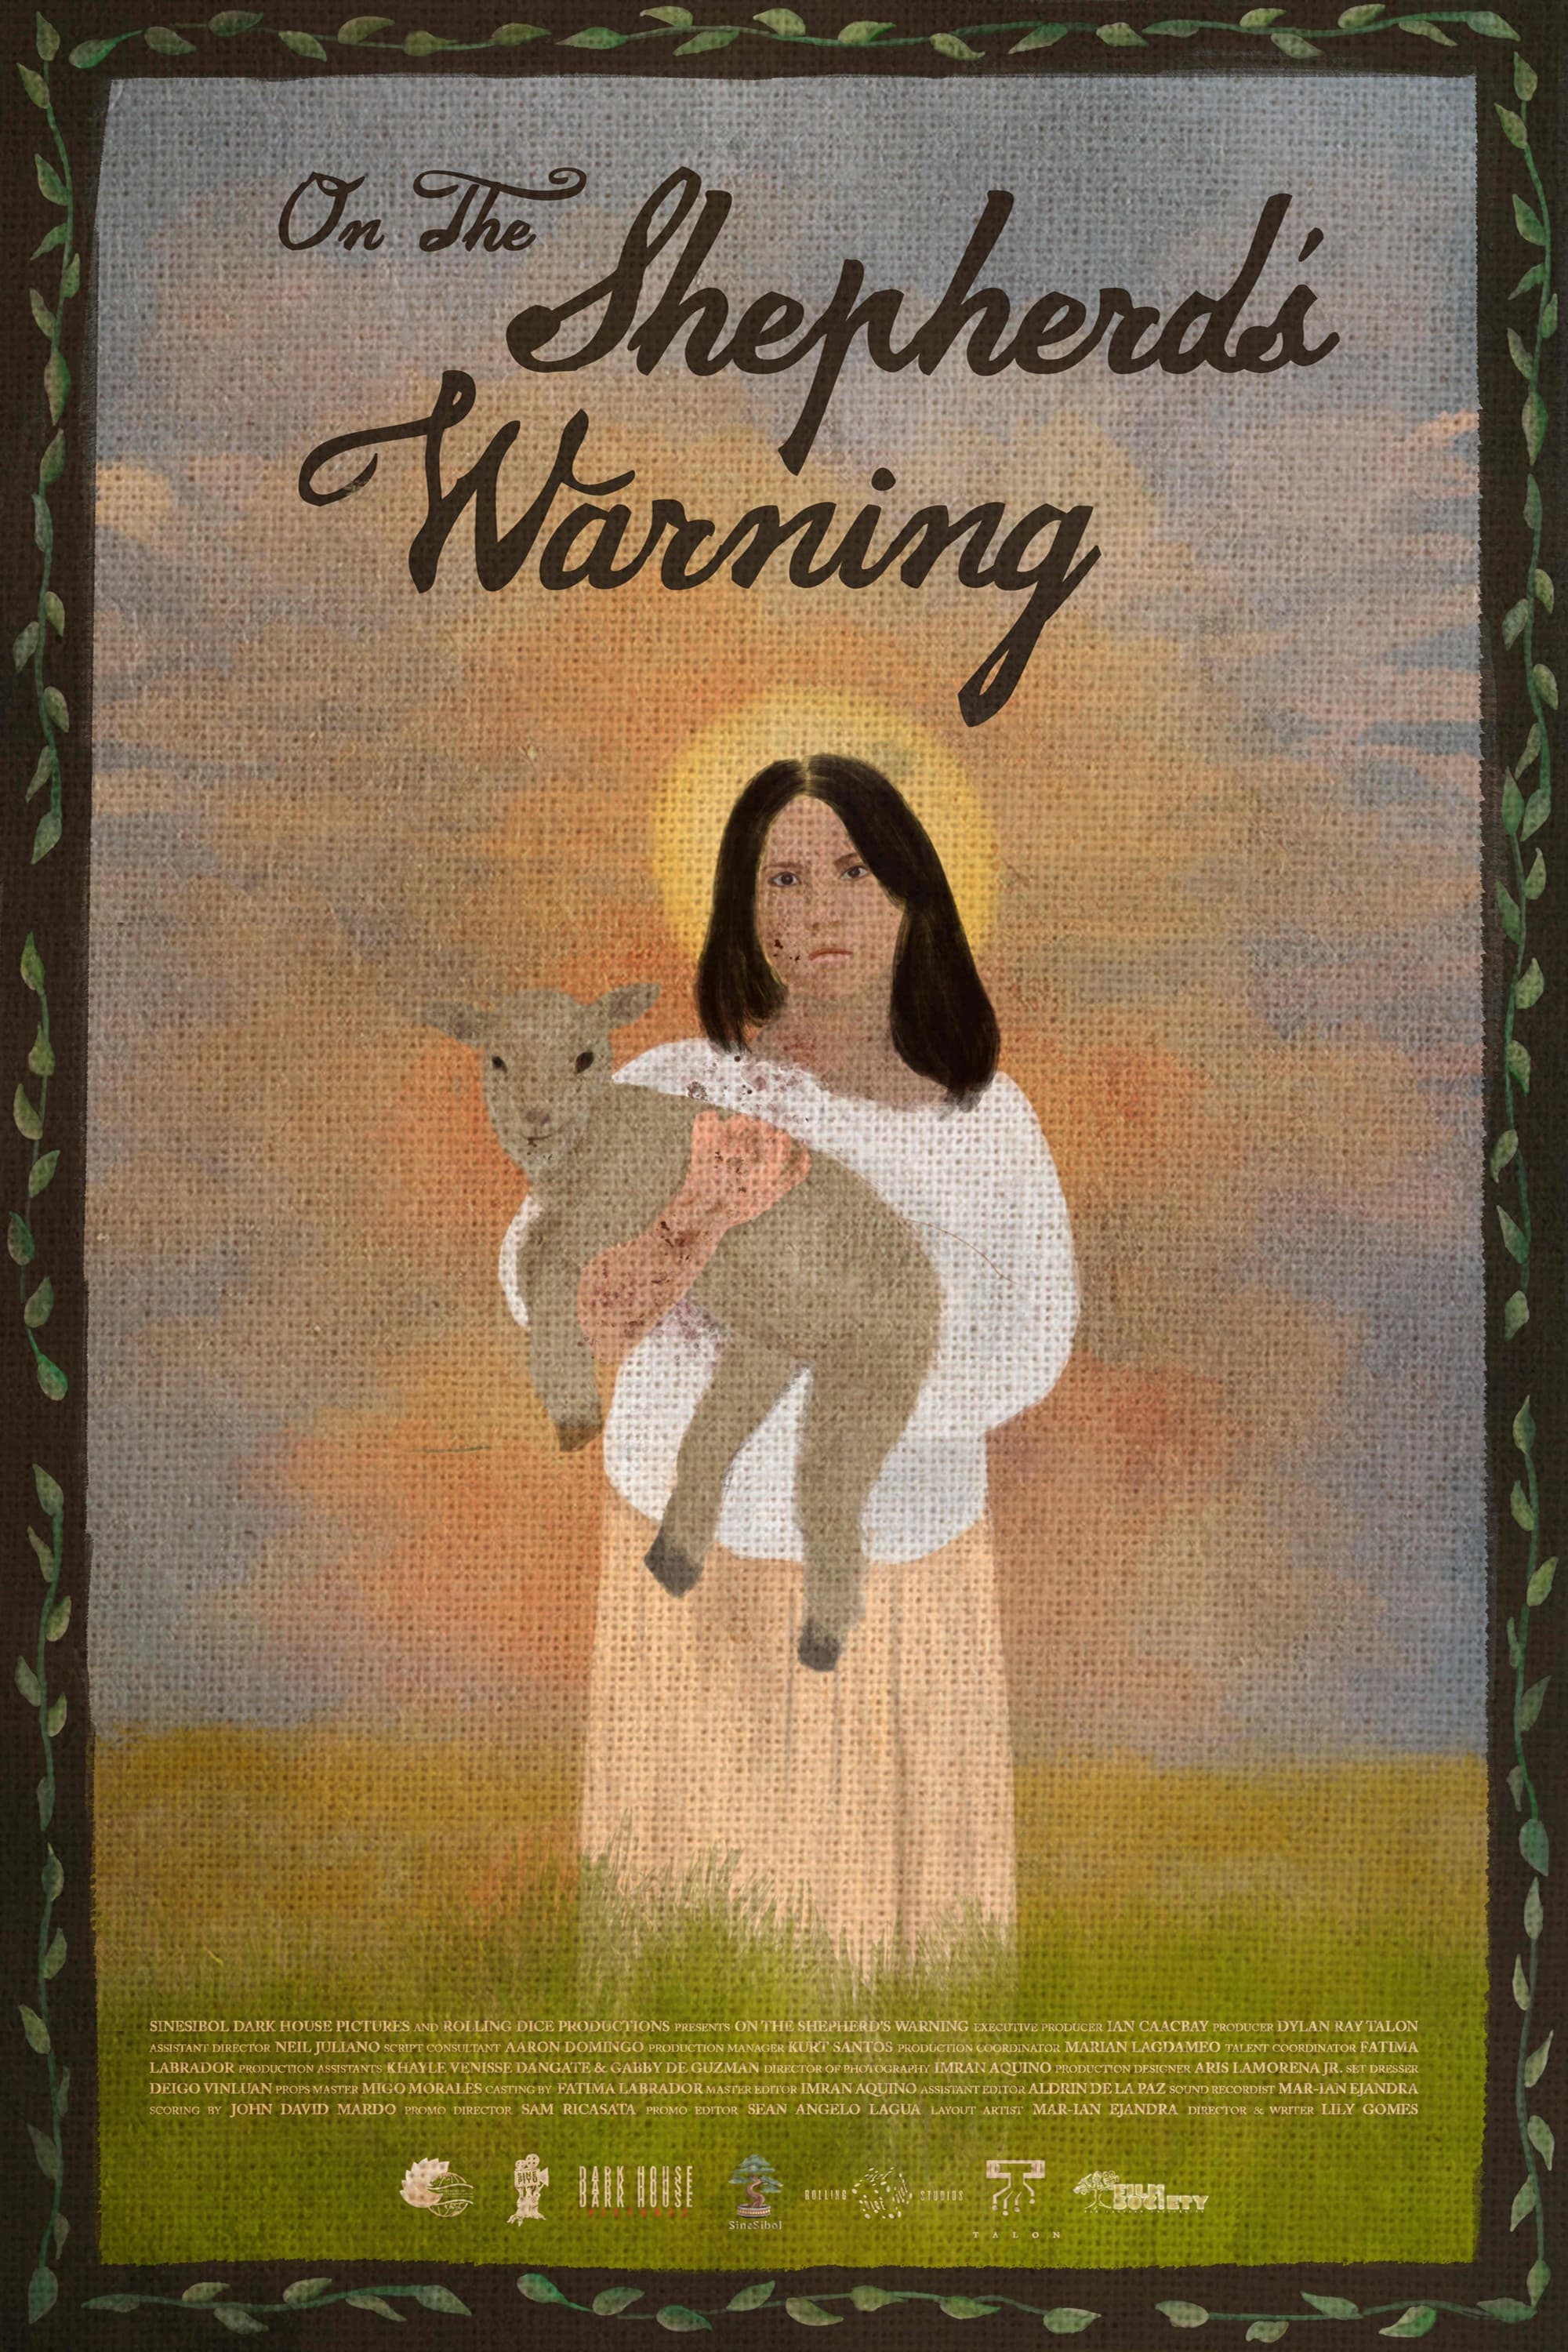 On the Shepherd's Warning